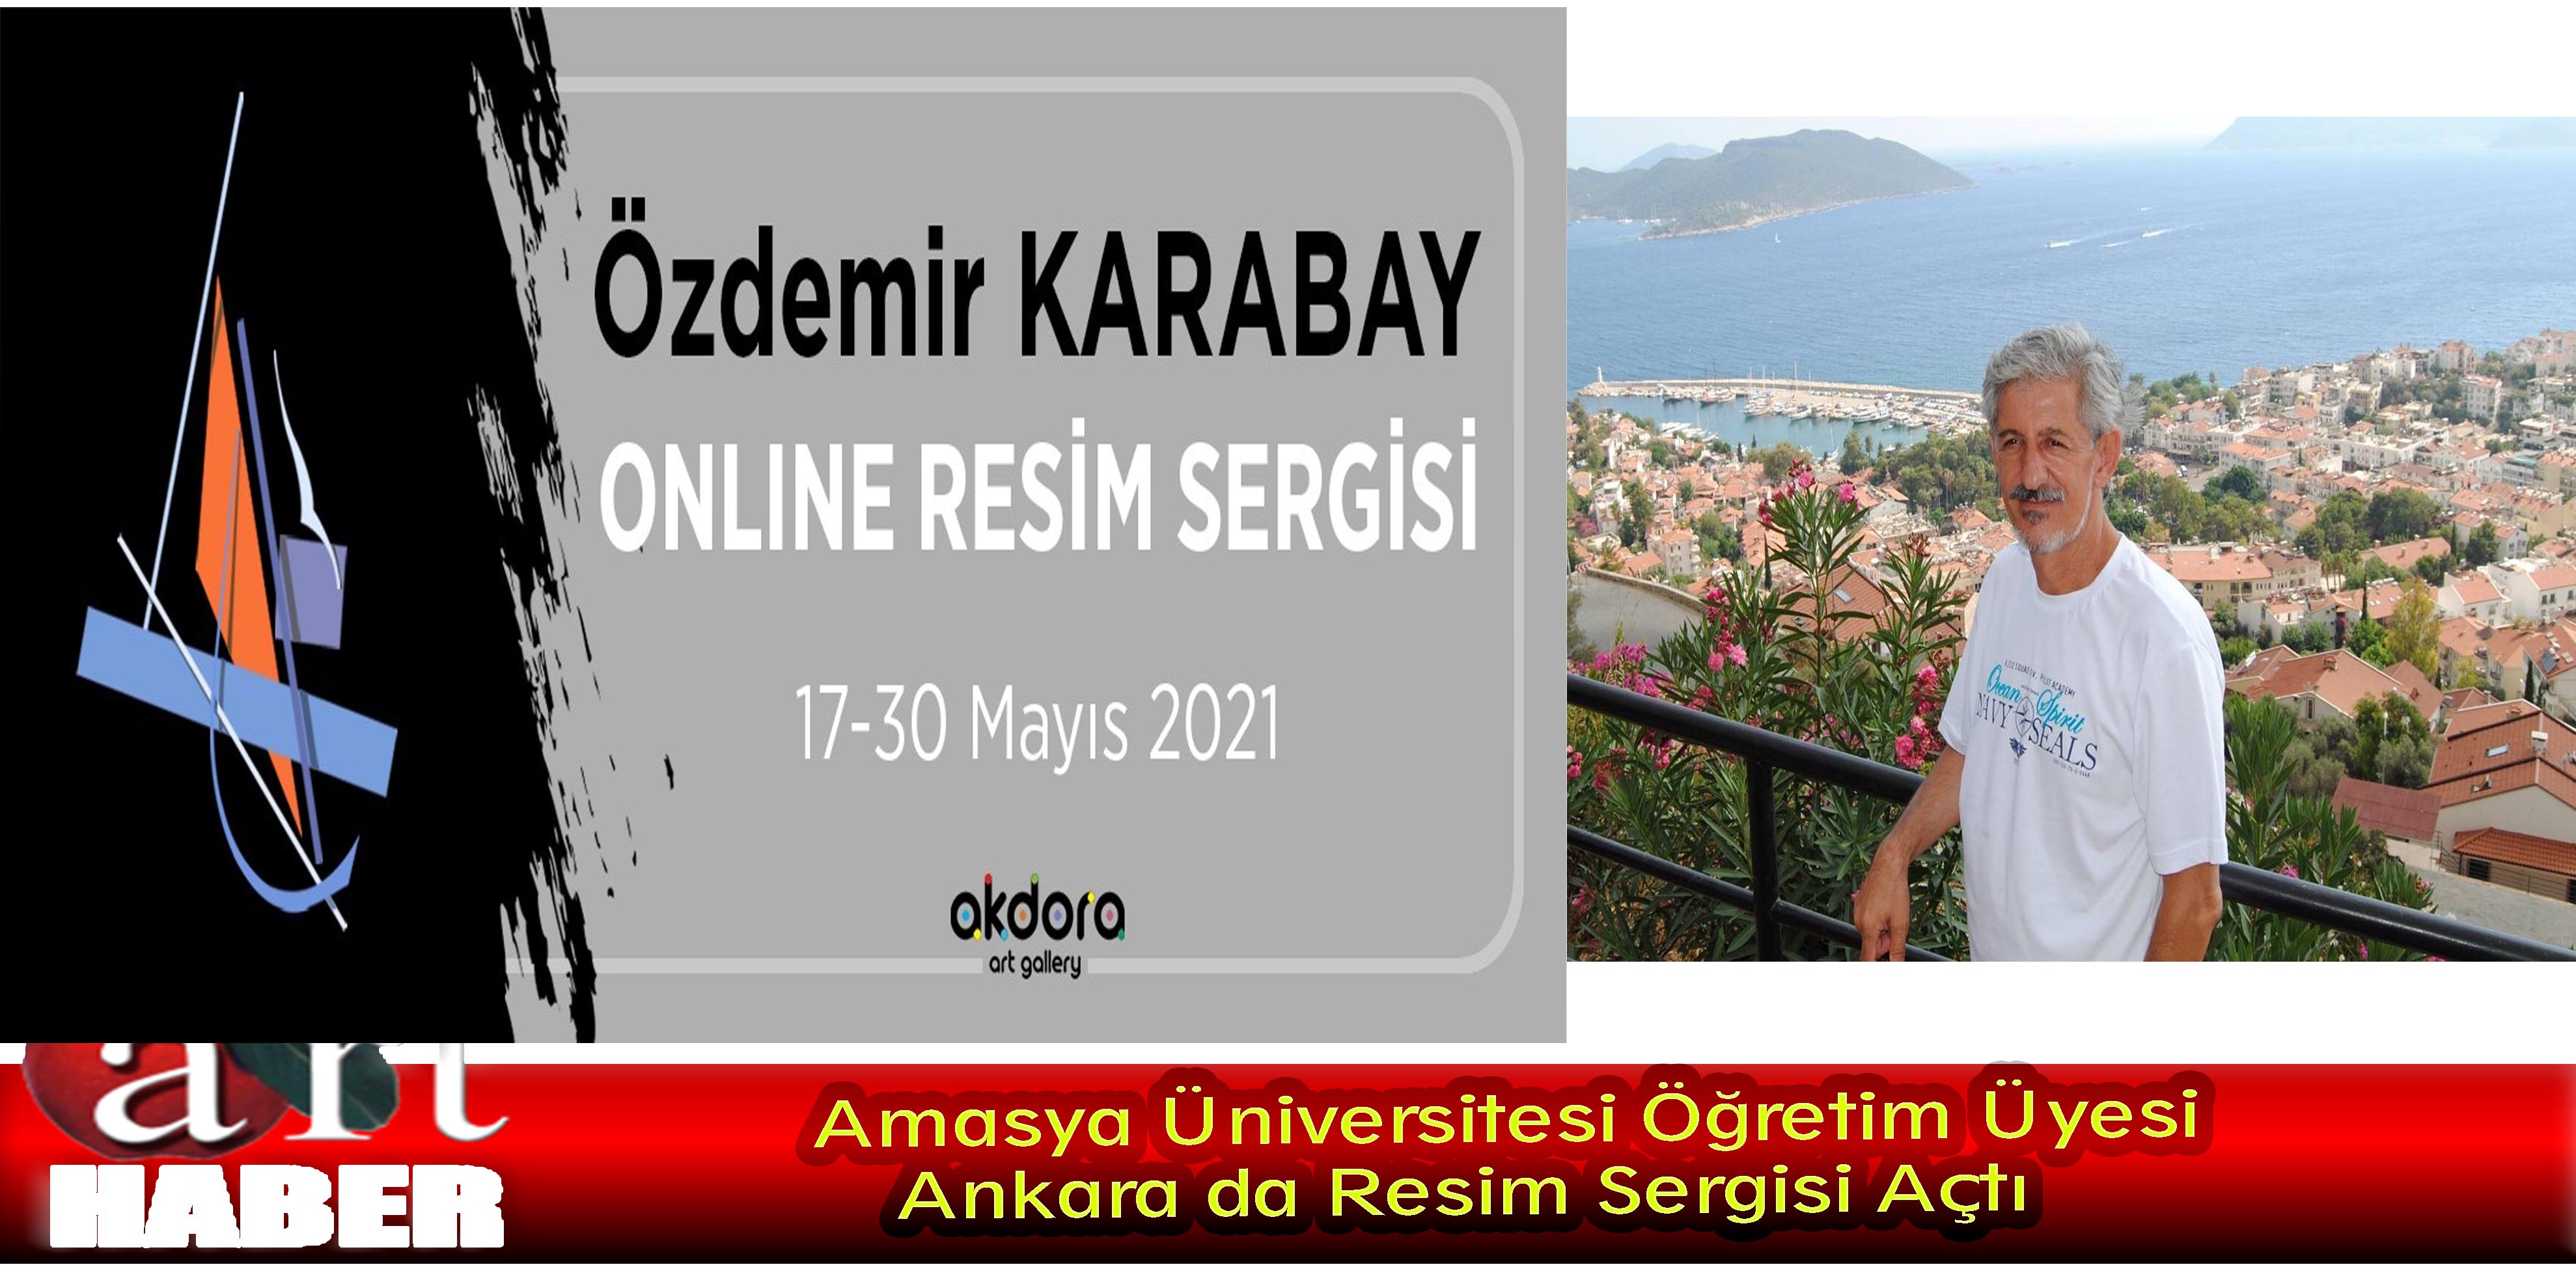 Amasya Üniversitesi Öğretim Üyesi Ankara da Resim Sergisi Açtı